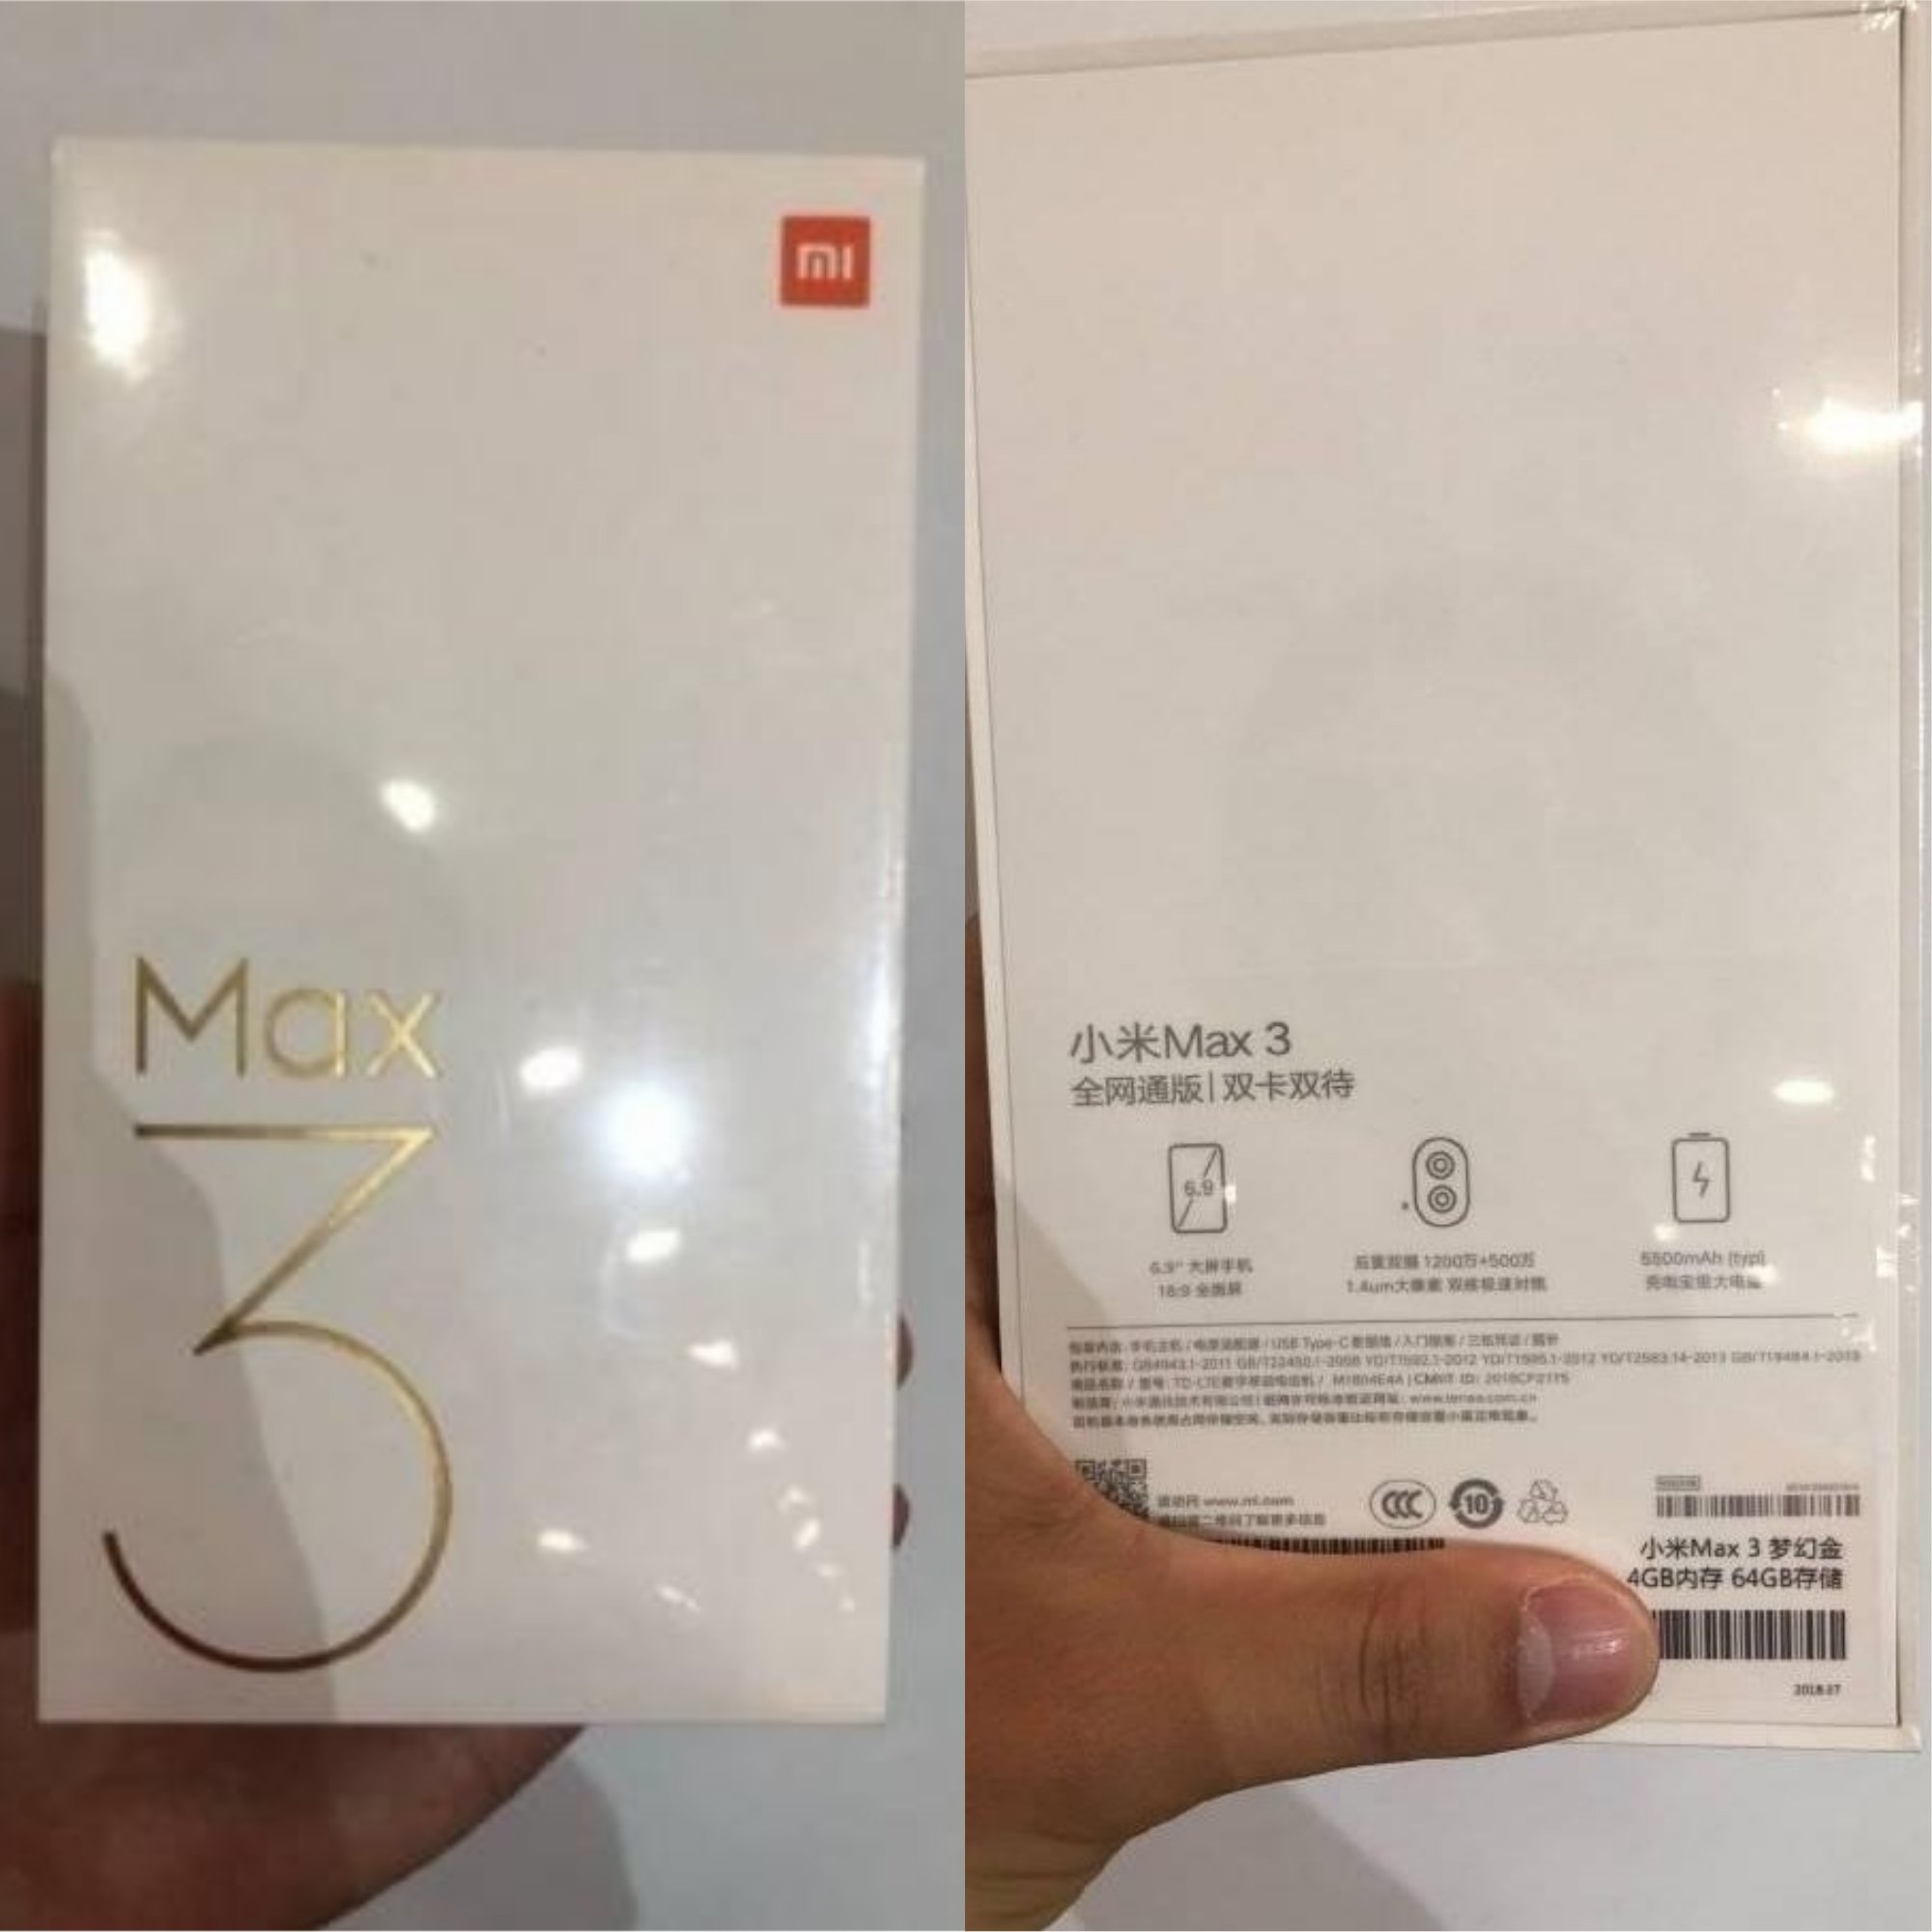 Размещена фотография уникальной коробки телефона Xiaomi Mi Max 3